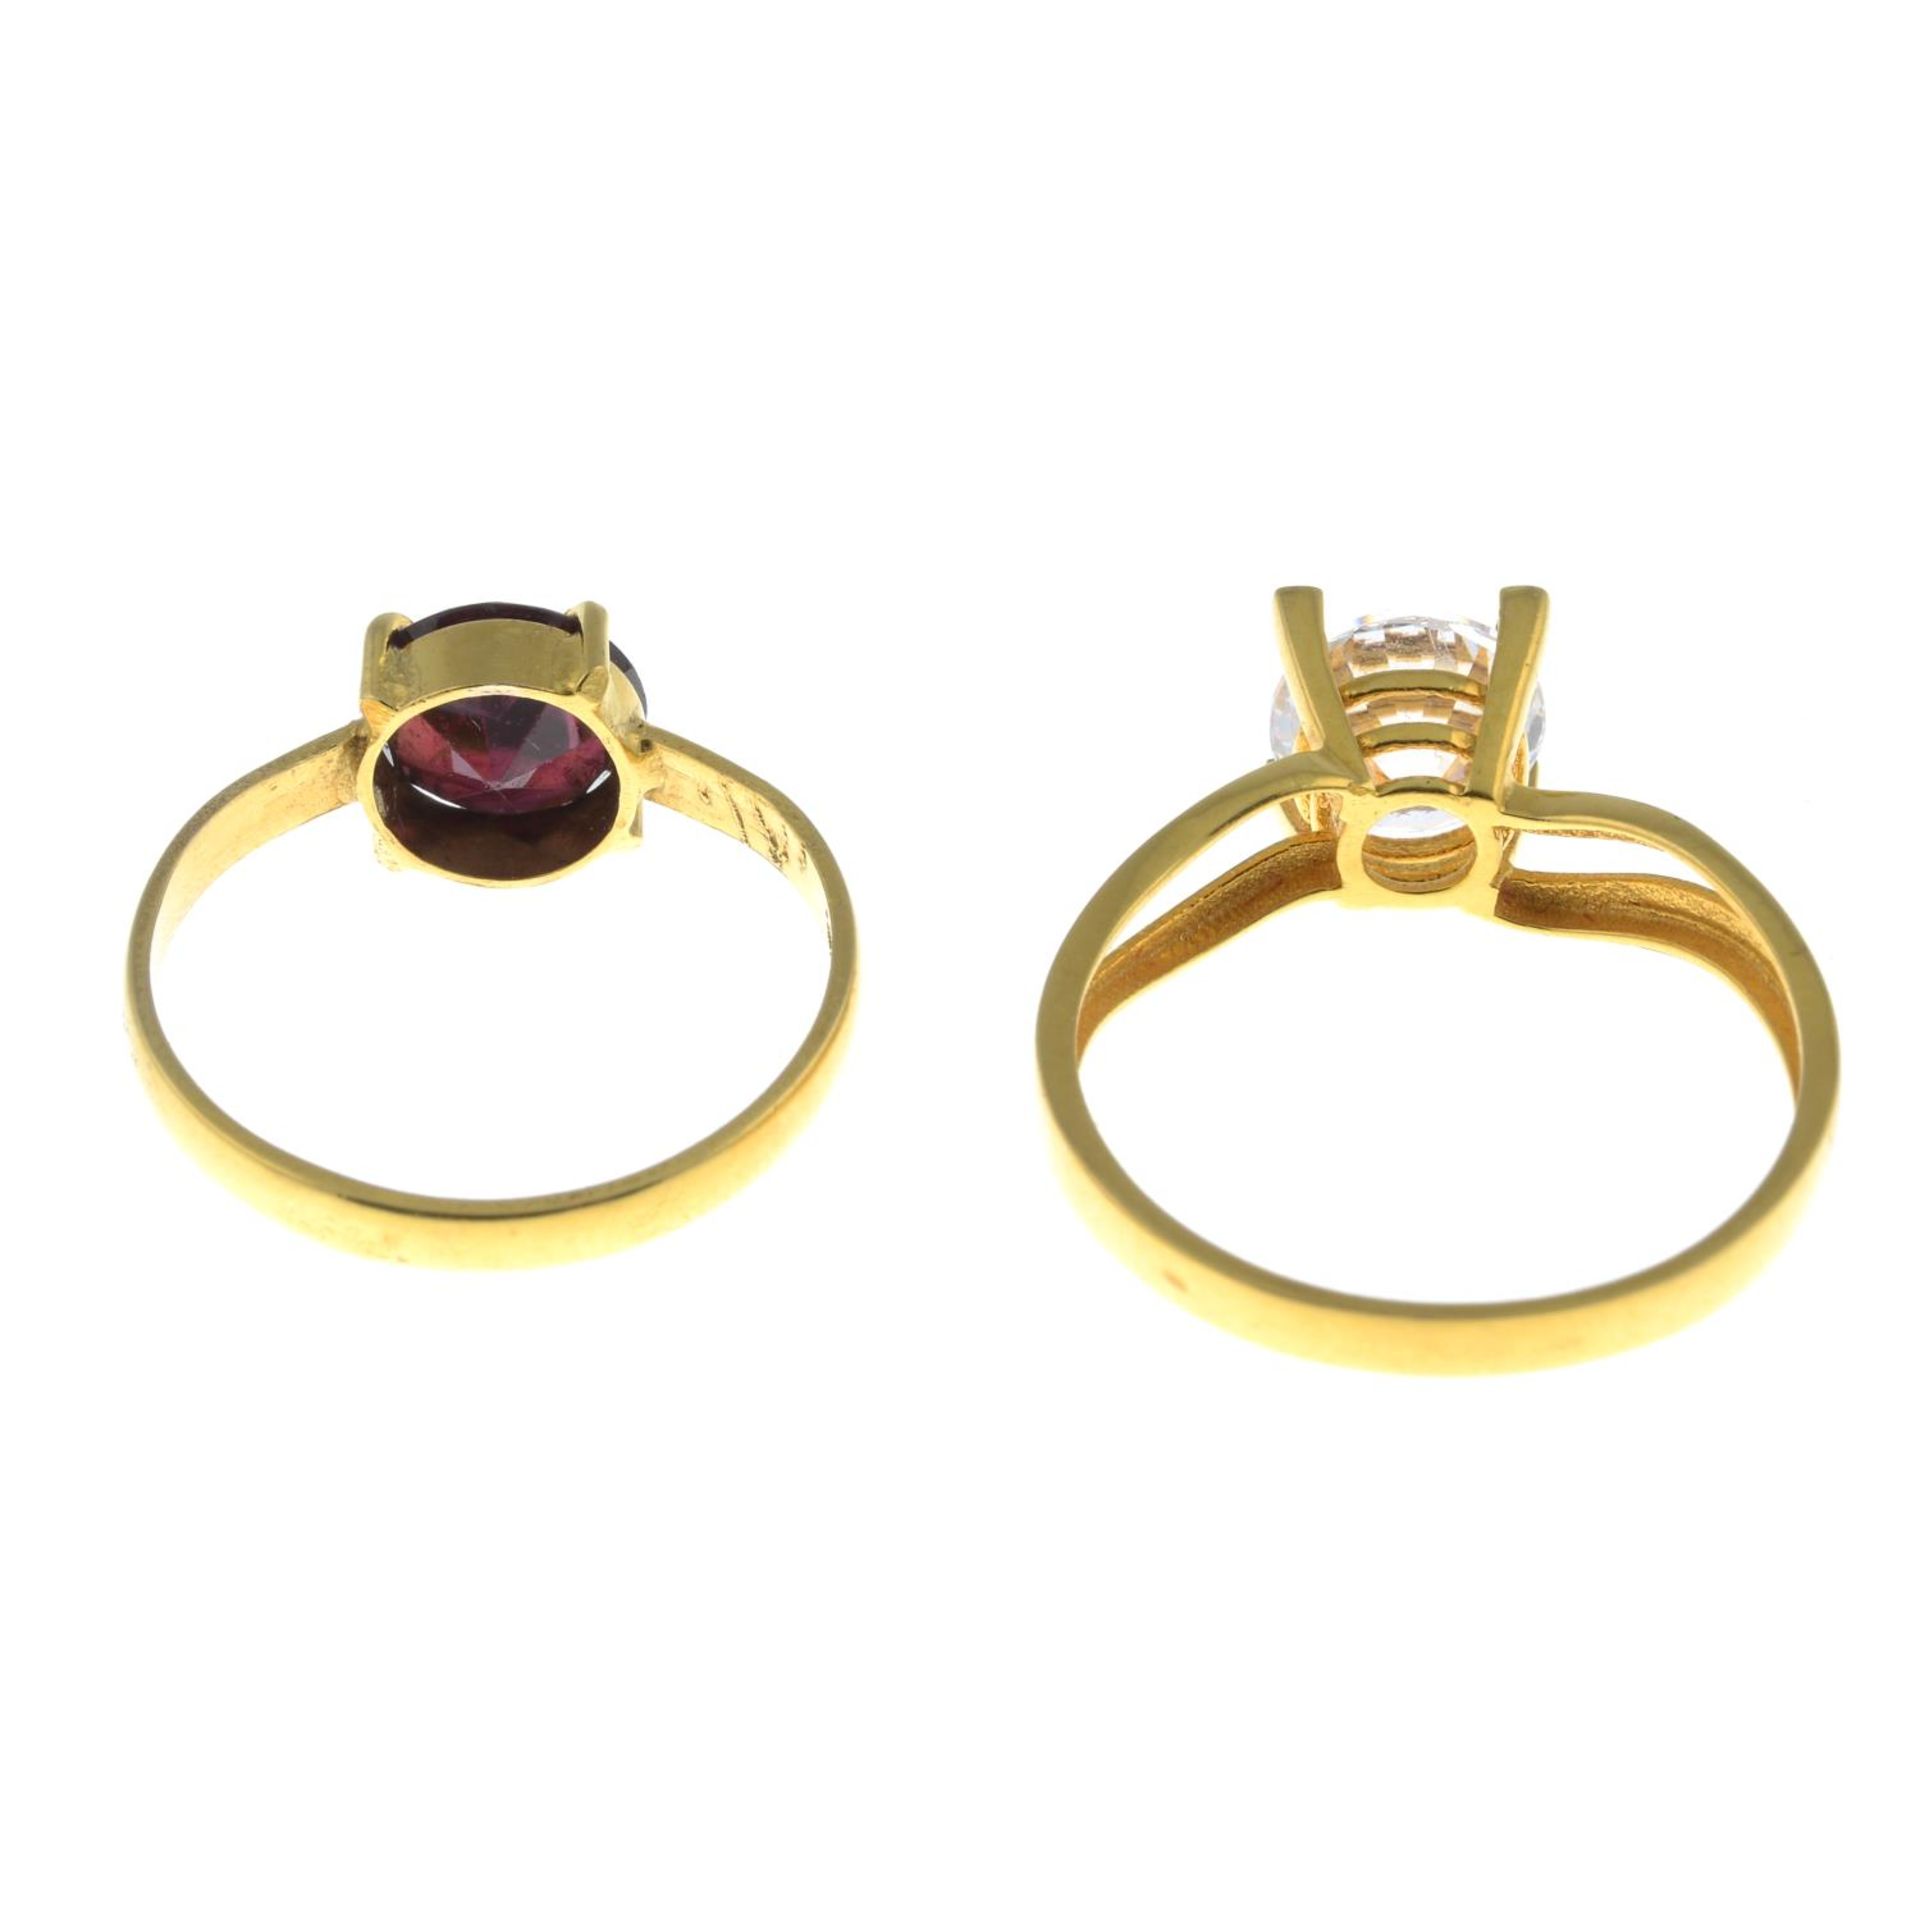 Garnet single-stone ring, stamped 21K, ring size K1/2, 2.2gms. - Bild 2 aus 3